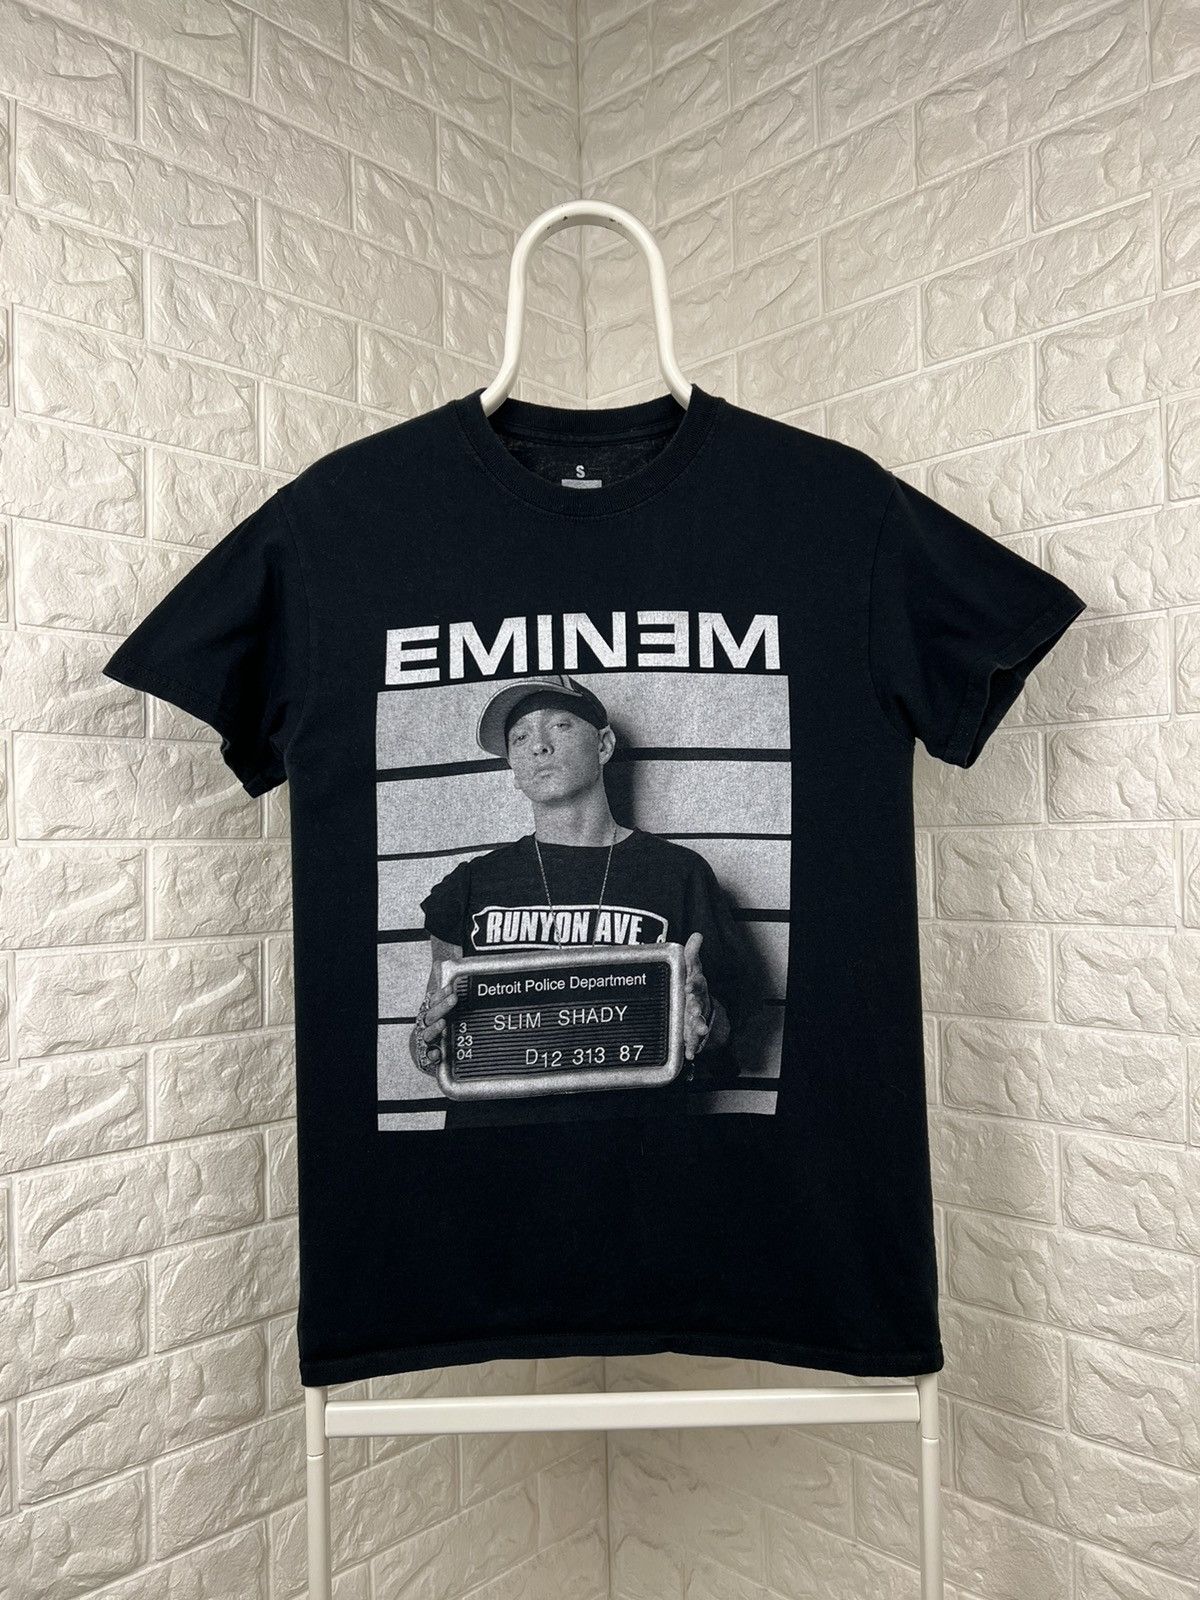 Pre-owned Eminem X Rap Tees Eminem Slim Shady 2013 Tee In Black